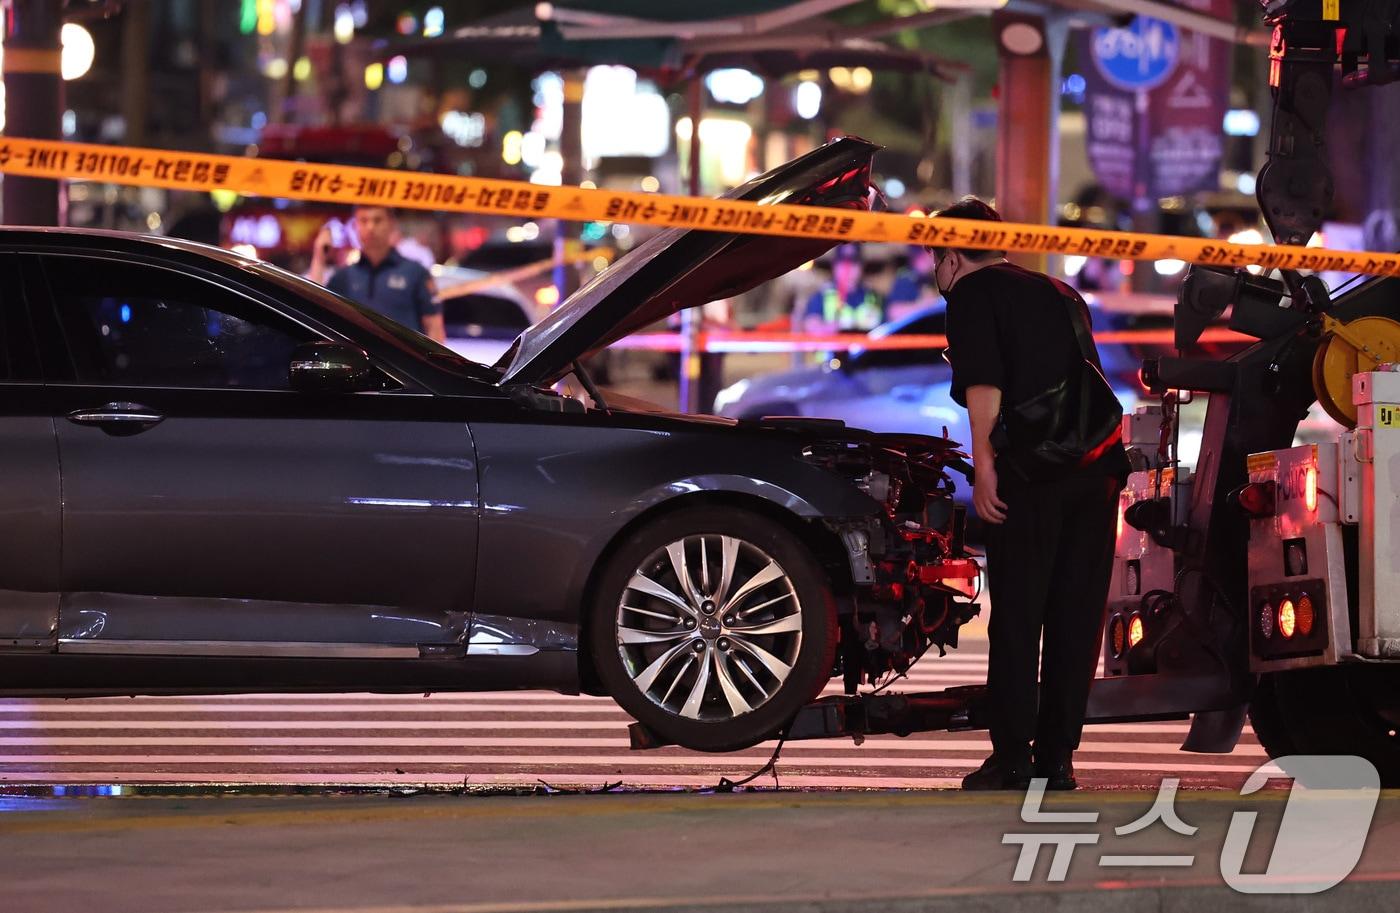 1일 밤 서울 중구 시청역 부근에서 한 남성이 몰던 차가 인도로 돌진해 최소 13명의 사상자가 발생한 가운데 조사관이 파손된 가해차량을 살피고 있다. 2024.7.2/뉴스1 ⓒ News1 